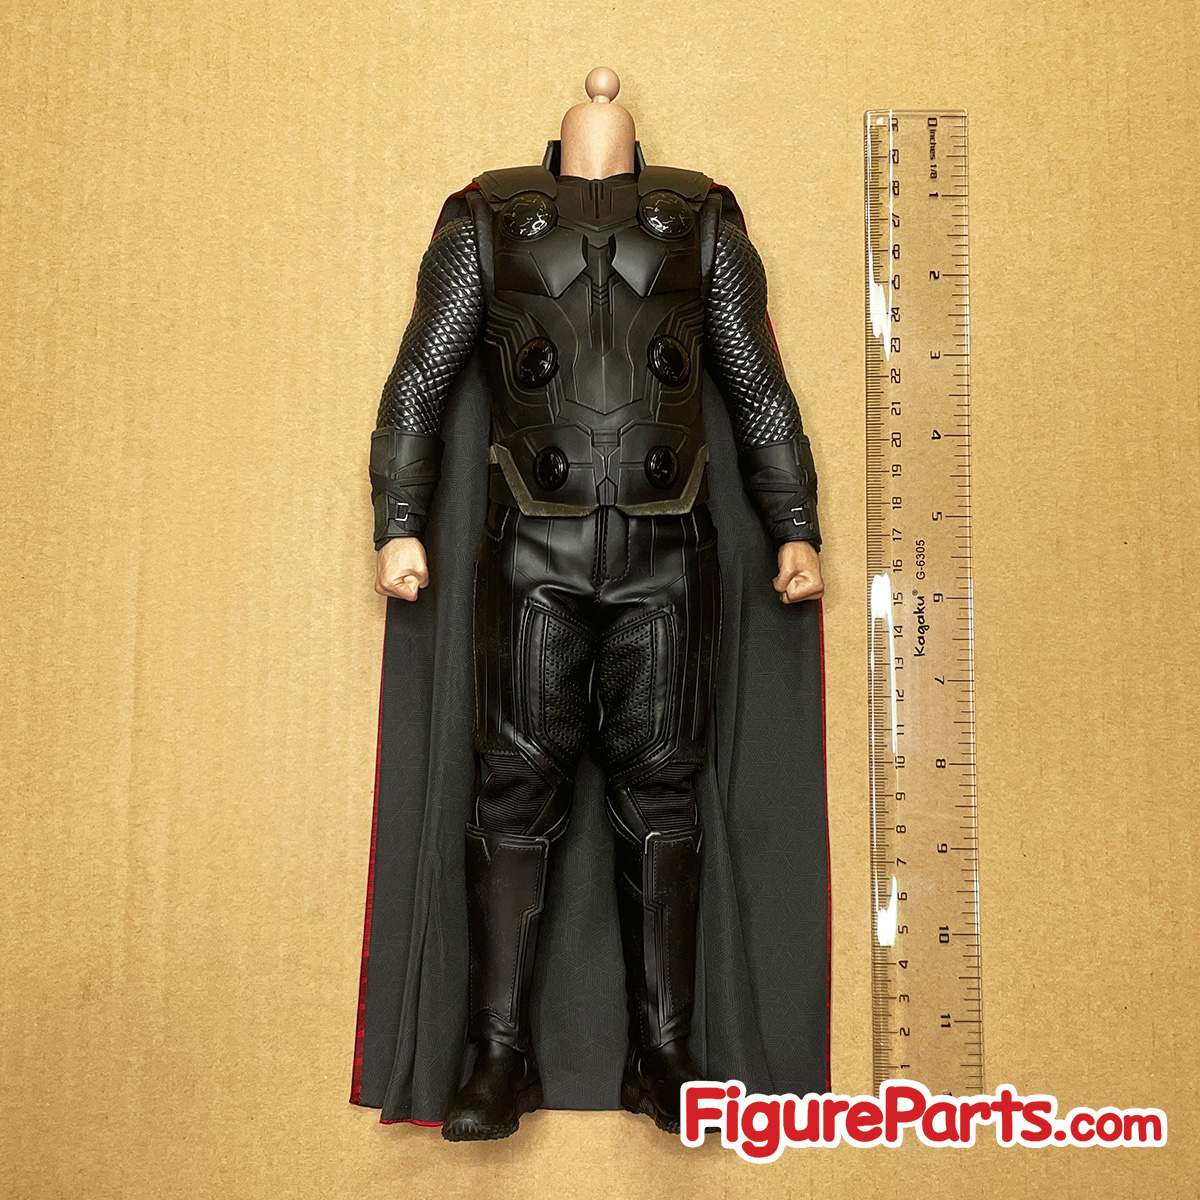 Body - Thor - Avengers Endgame - Hot Toys mms557